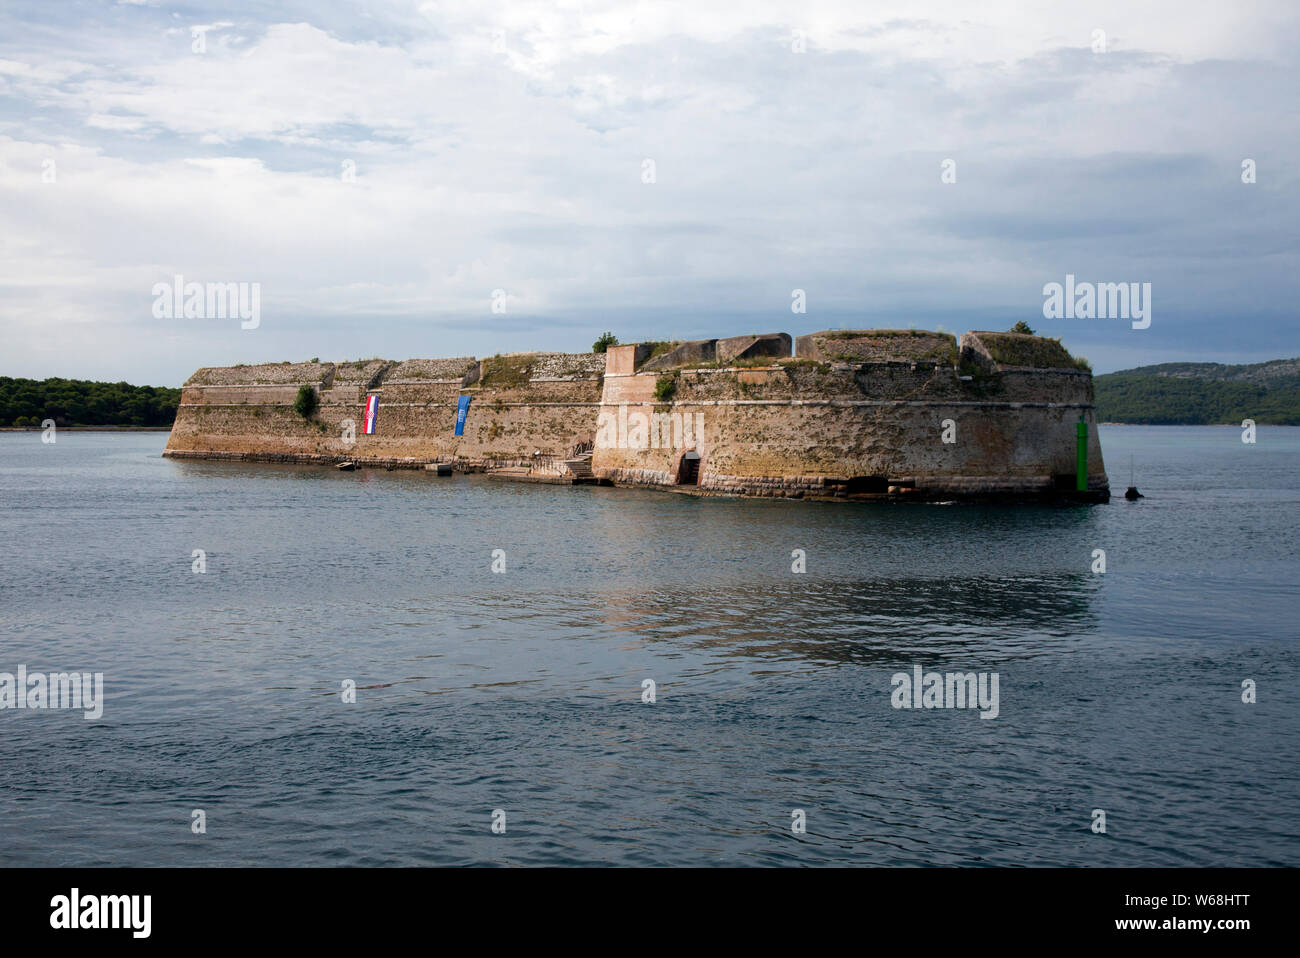 Construit au 16e siècle, la forteresse de Saint-Nicolas, Sibenik, Croatie, vus de l'approche du port. Banque D'Images